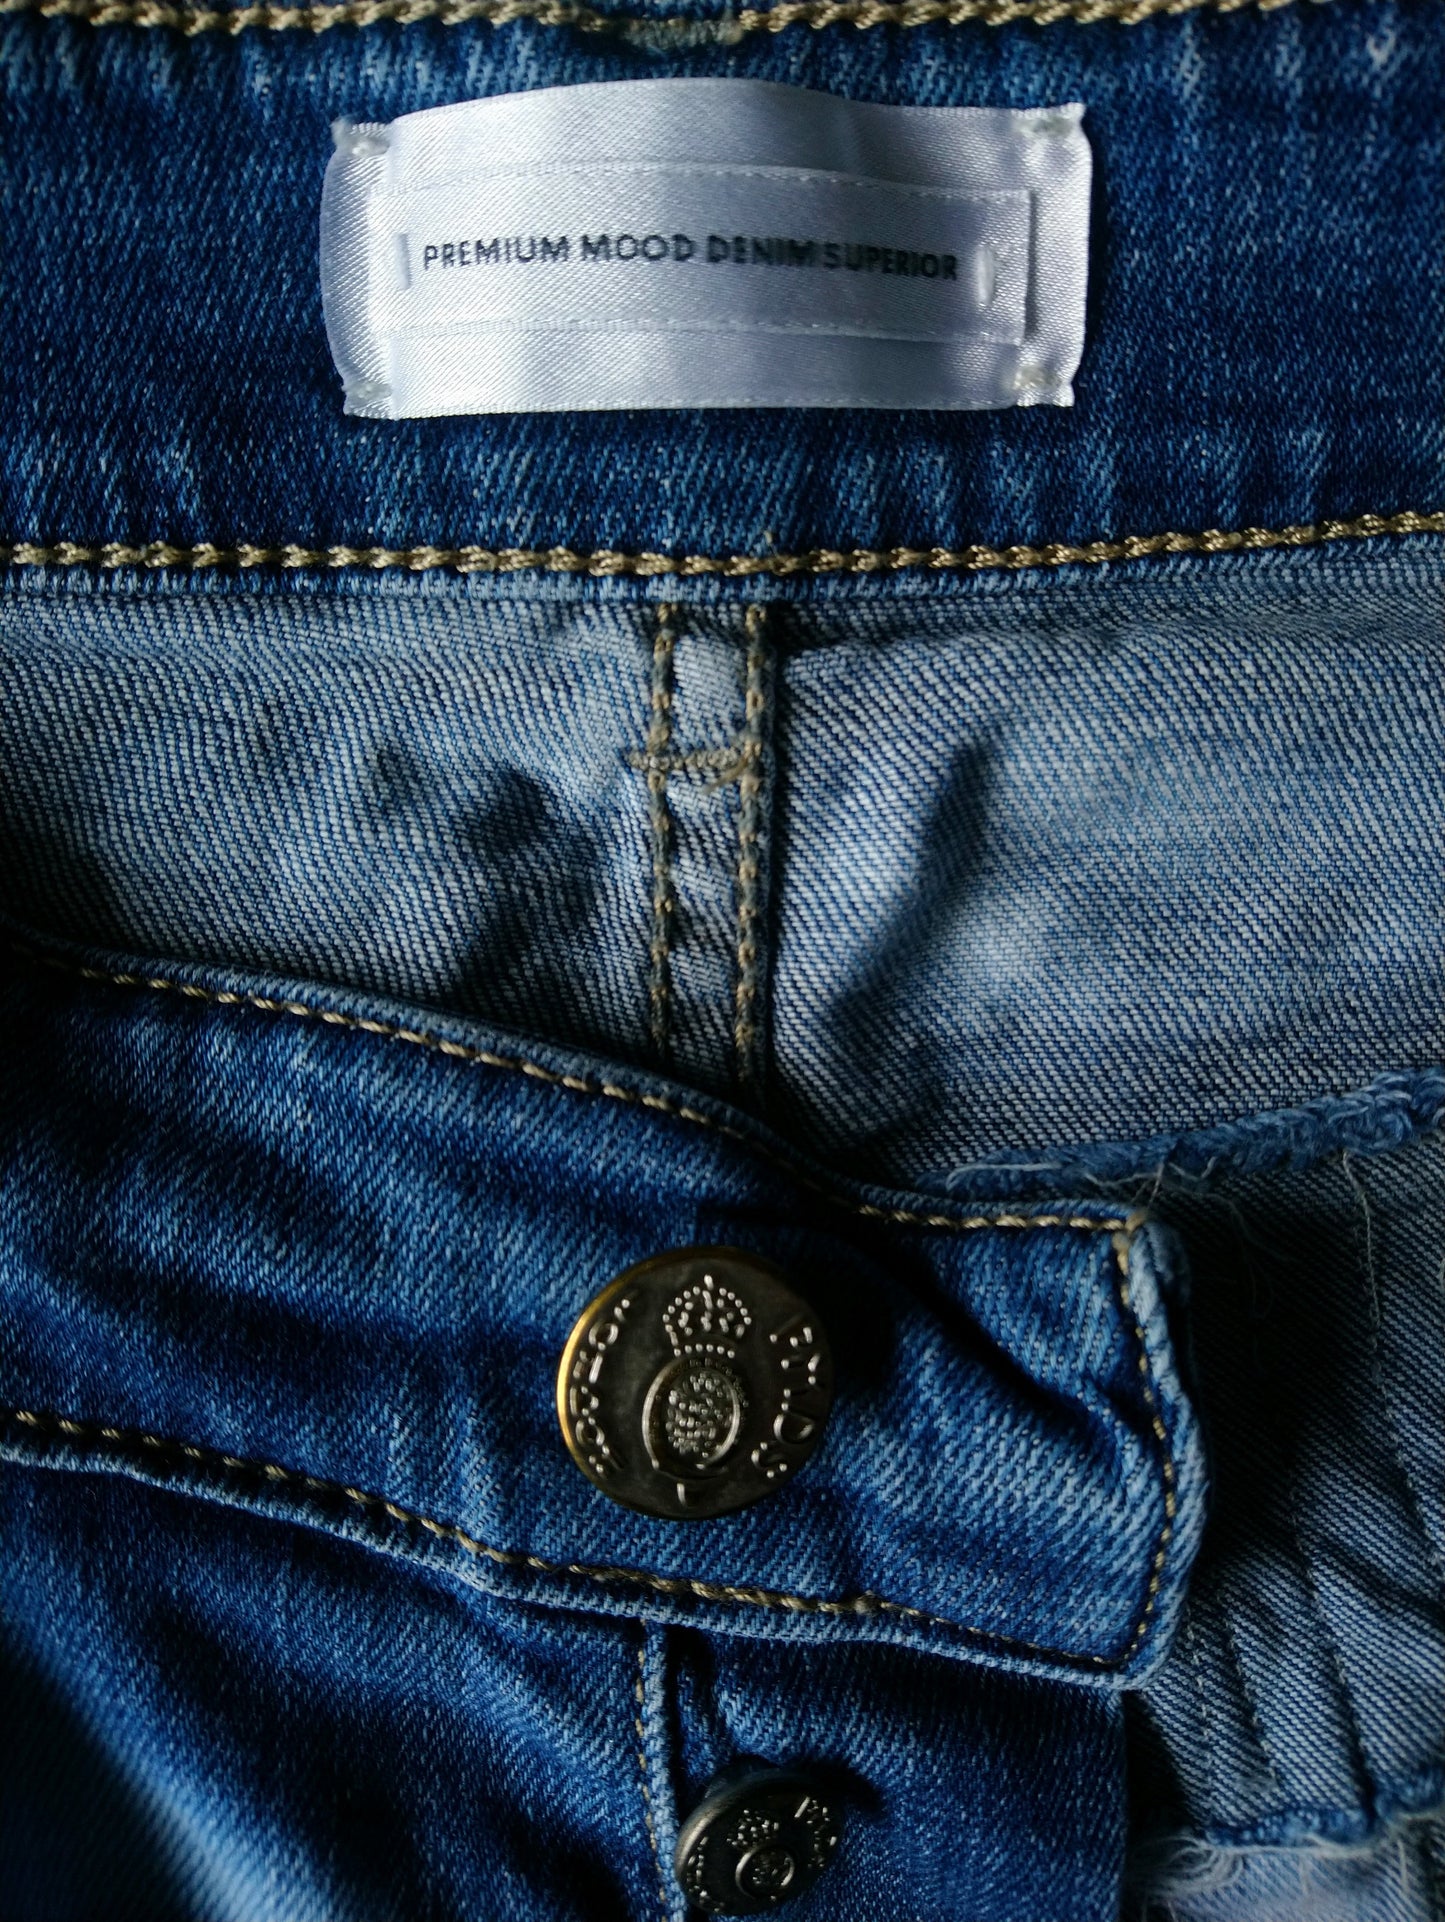 Jeans PMDS (Premium Mood Denim Superior). Colorato azzurro. Taglia W32-L30. Stirata.